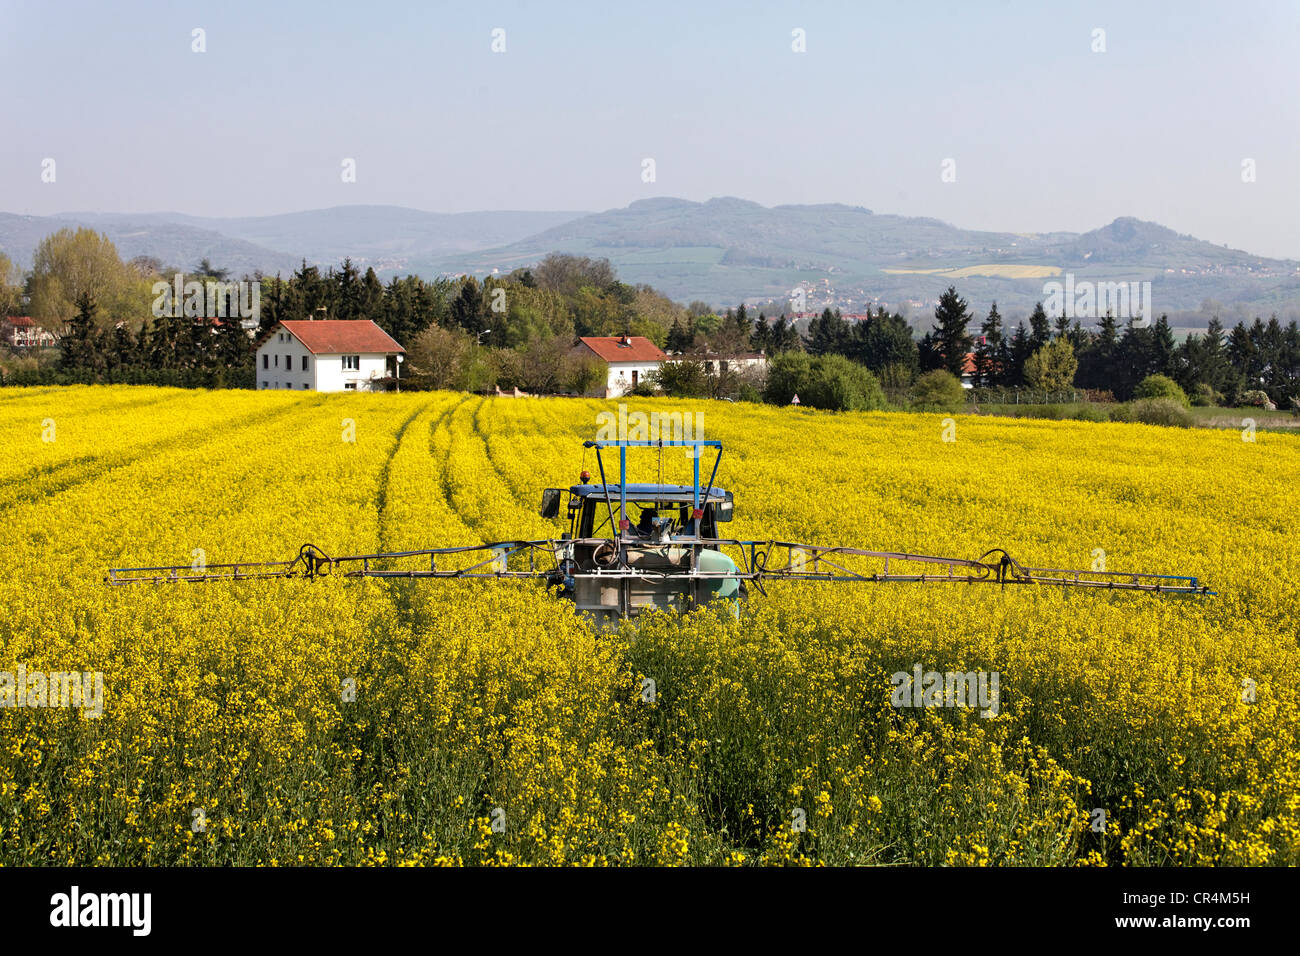 Agricola trattamento chimico sul campo di colza nei pressi di case, Francia, Auvergne, Europa Foto Stock